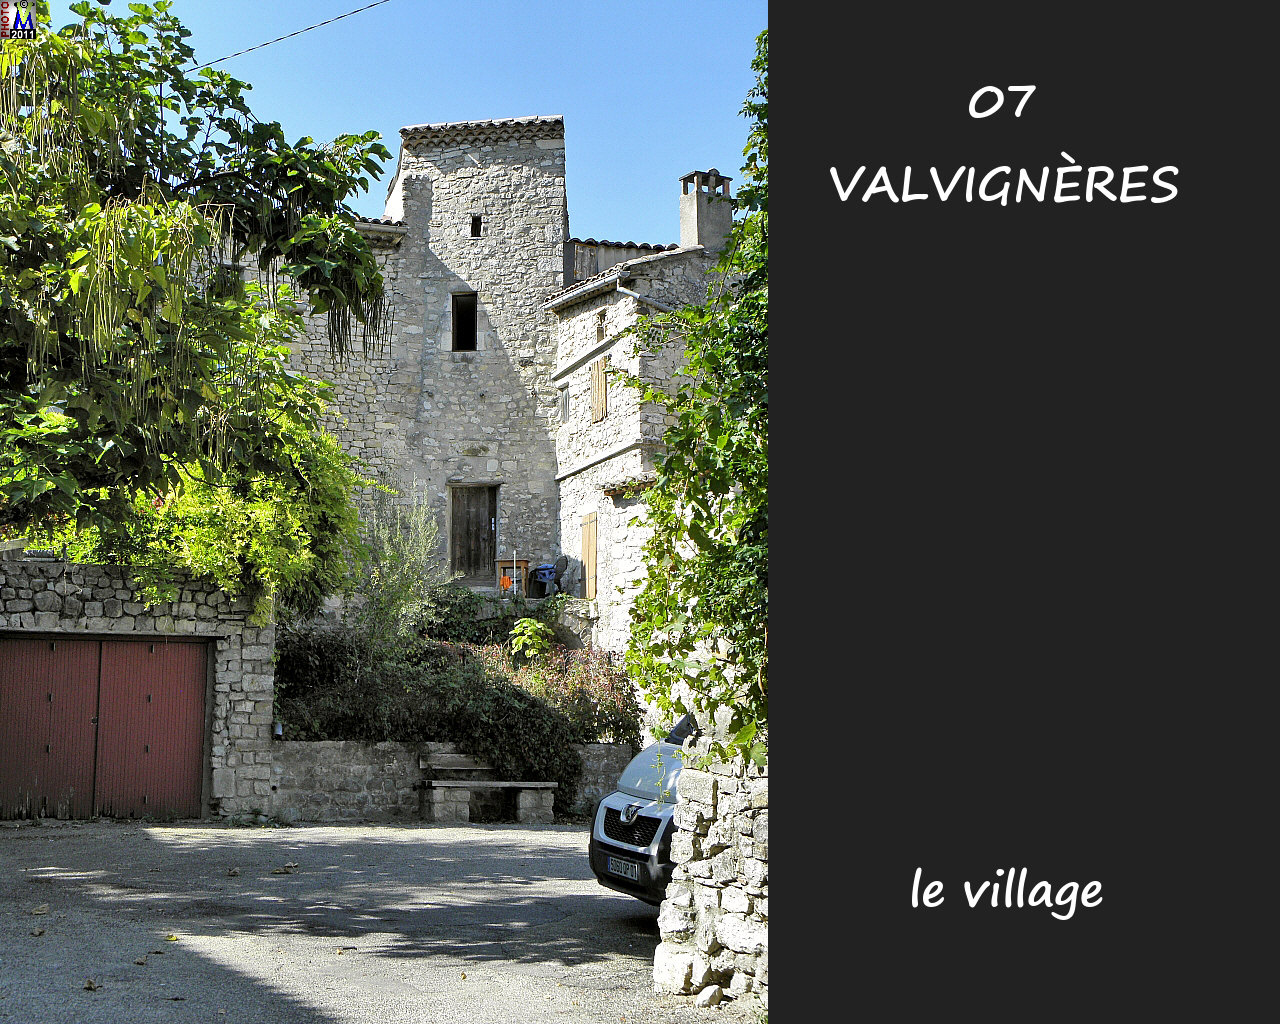 07VALVIGNERES_village_134.jpg